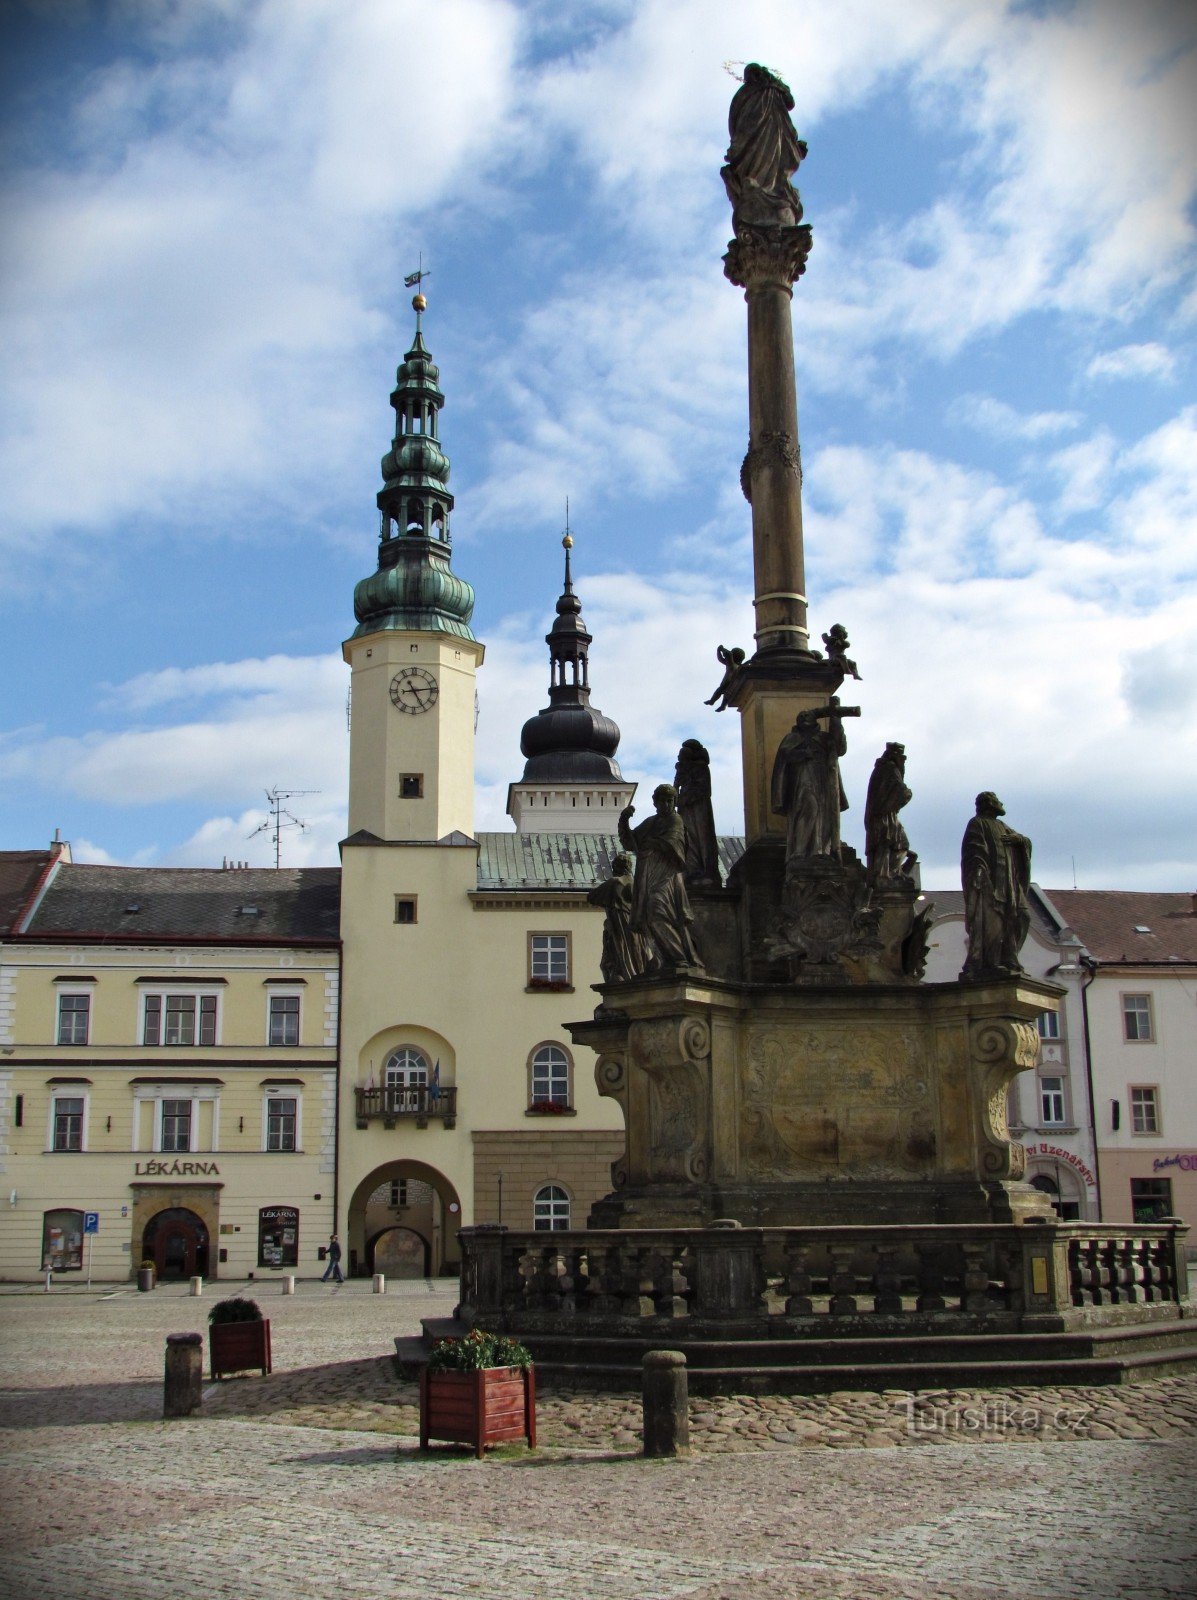 Trg v Moravská Třebová in pridih renesanse